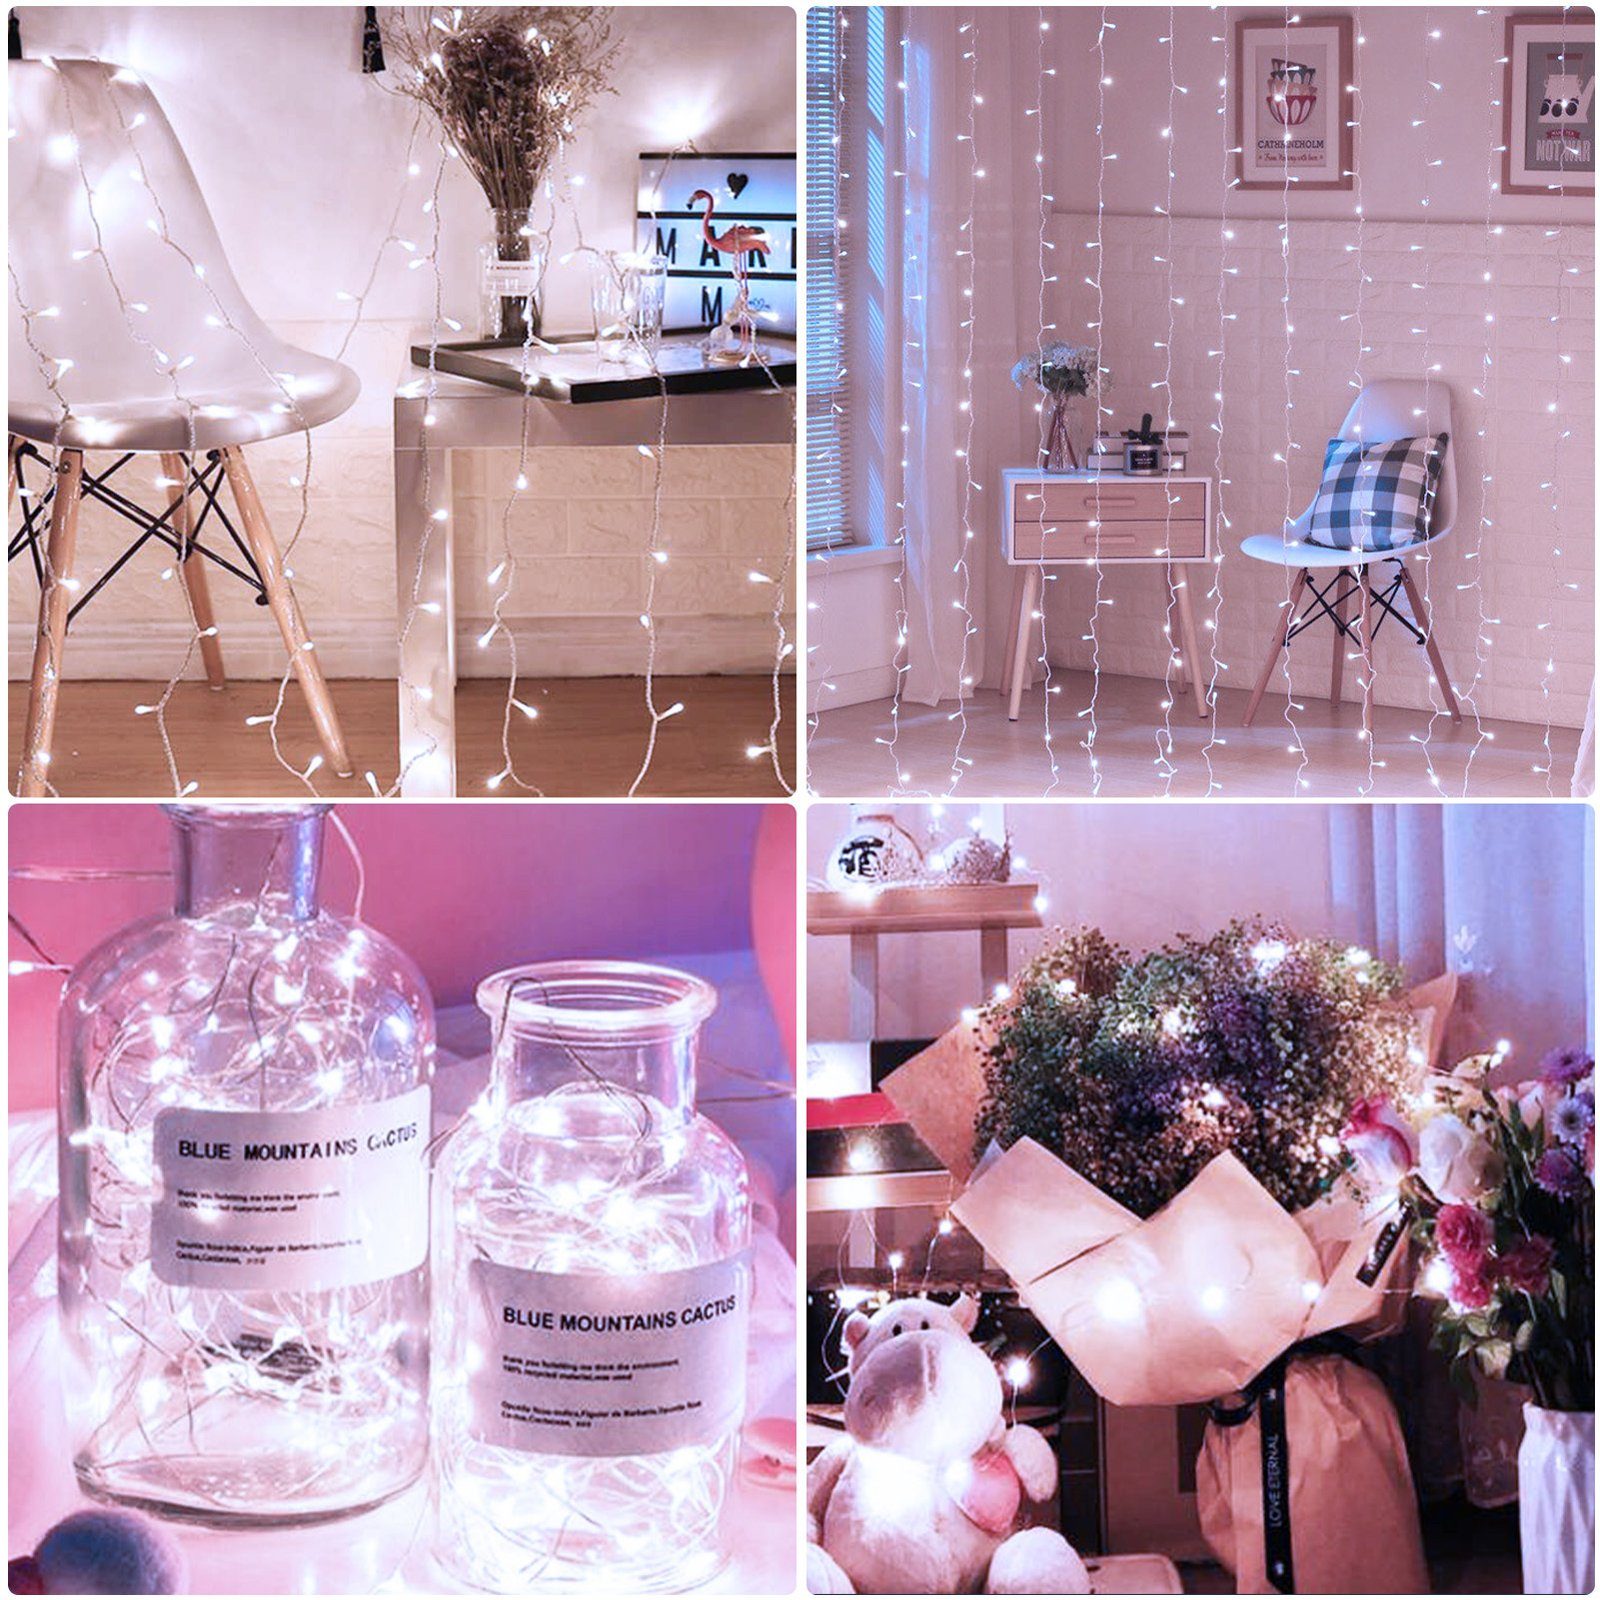 FUROKOY LED-Lichterkette LED 600 , Lichterkette farbige Dekoration blinkende Lichter Hochzeit weiß, Urlaub Lichter Lichter Lichter, 100m Stern Weihnachten